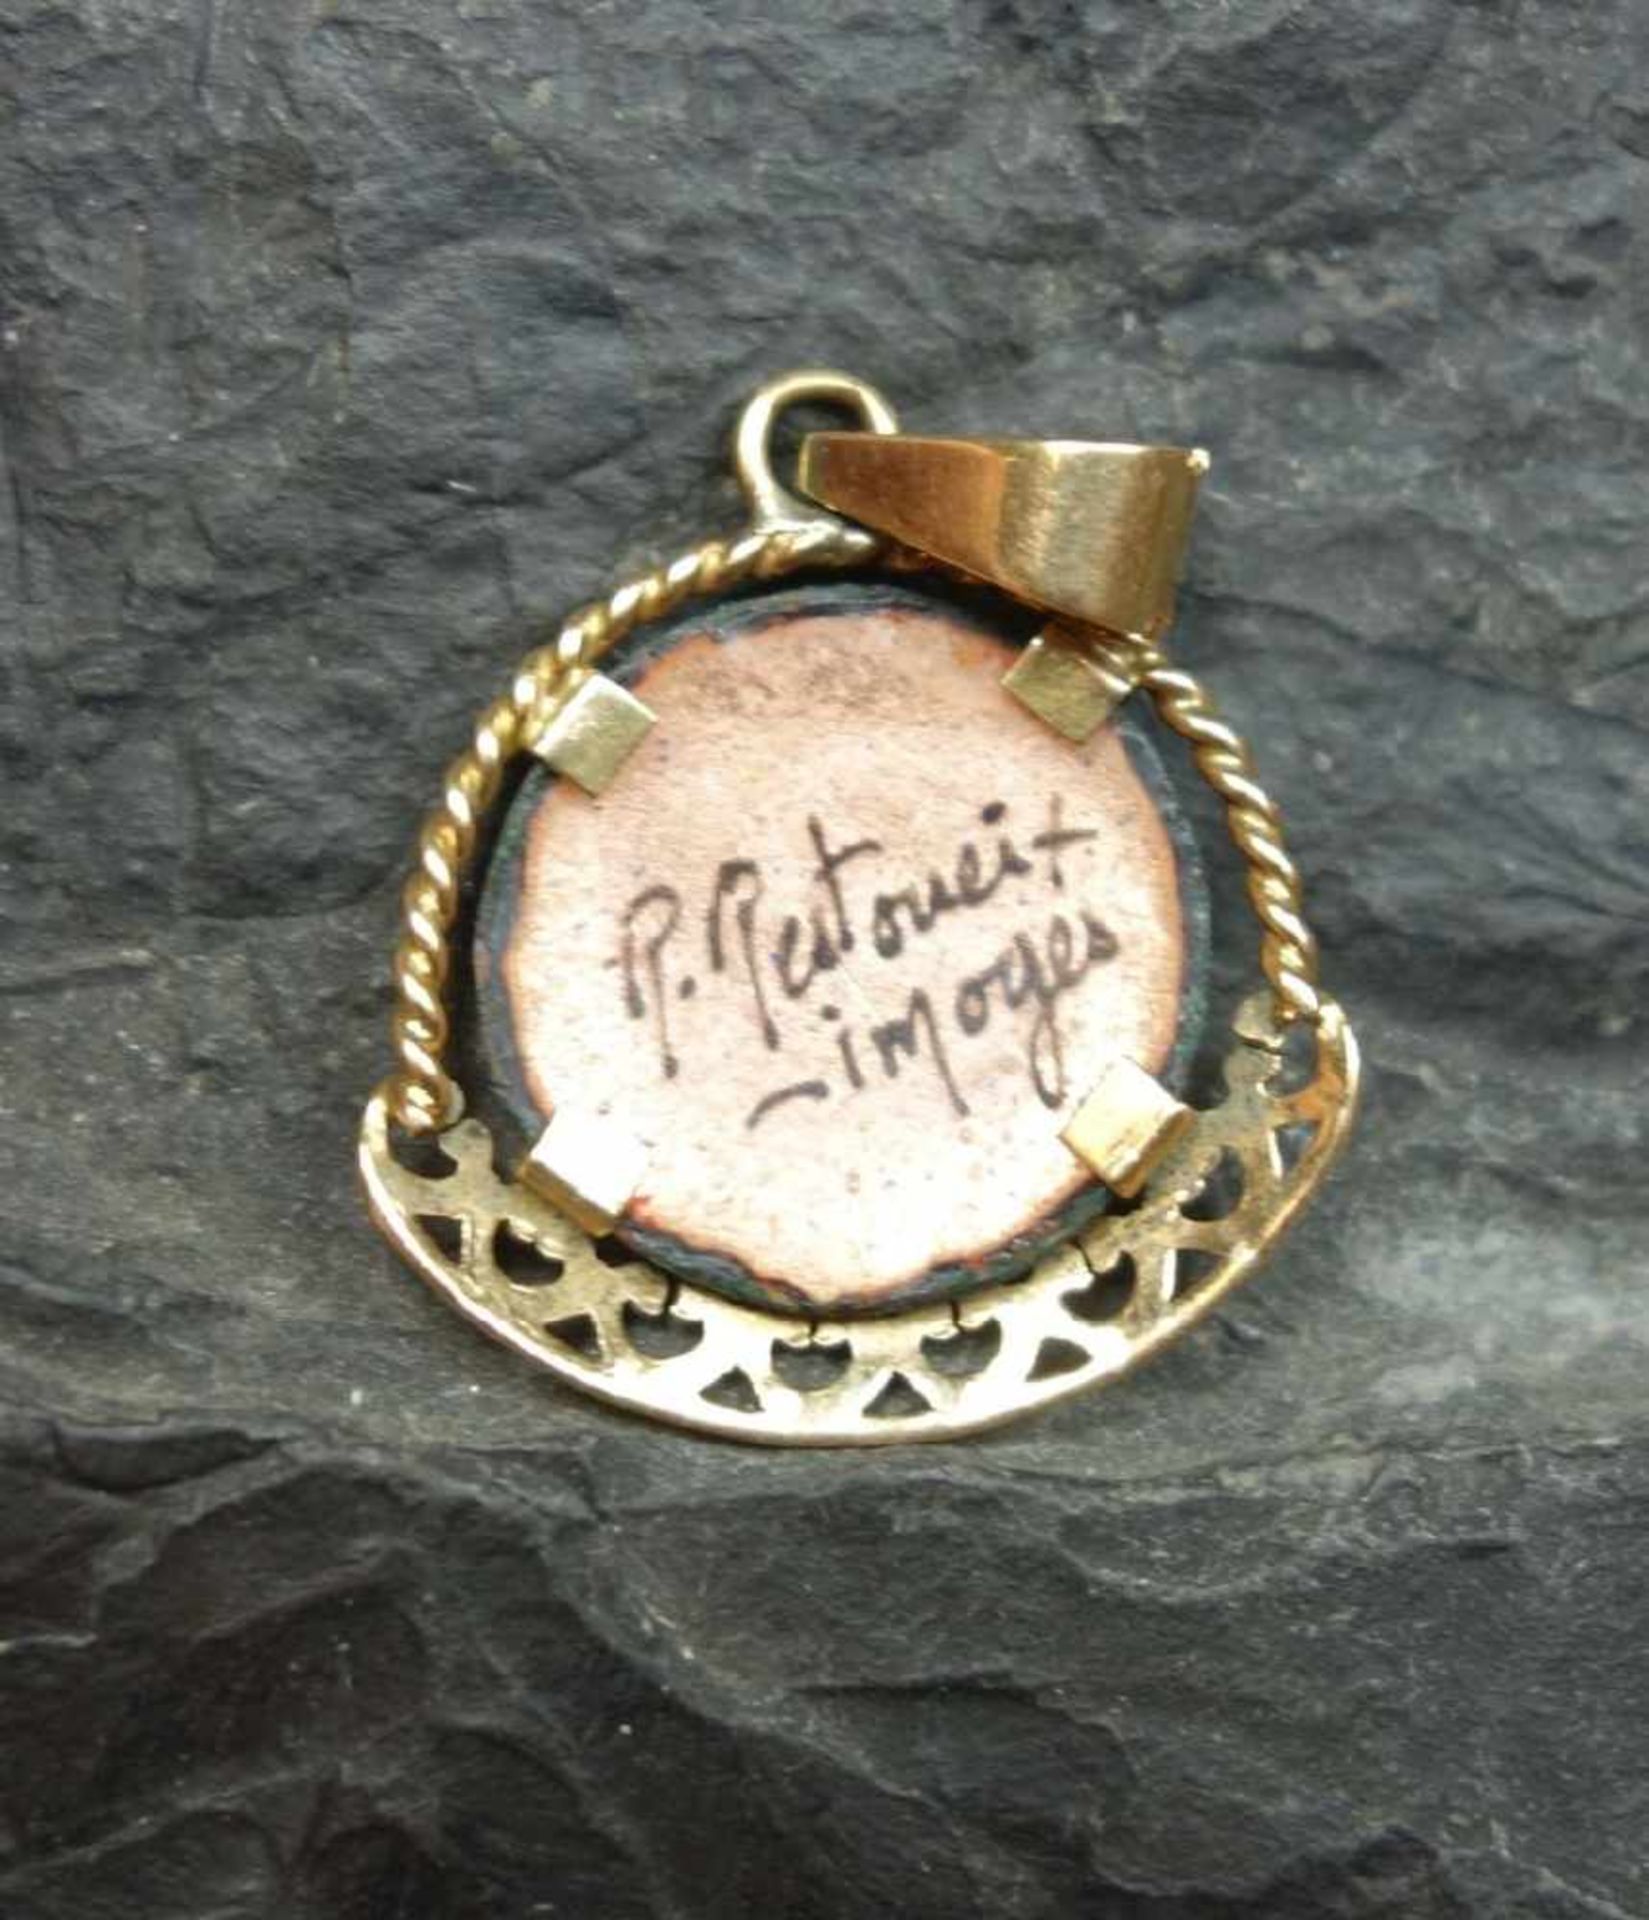 EMAILLE - ANHÄNGER / pendant, 750er Gelbgold (getestet), um 1900, signiert "P. Pestoneit (?), - Bild 3 aus 3